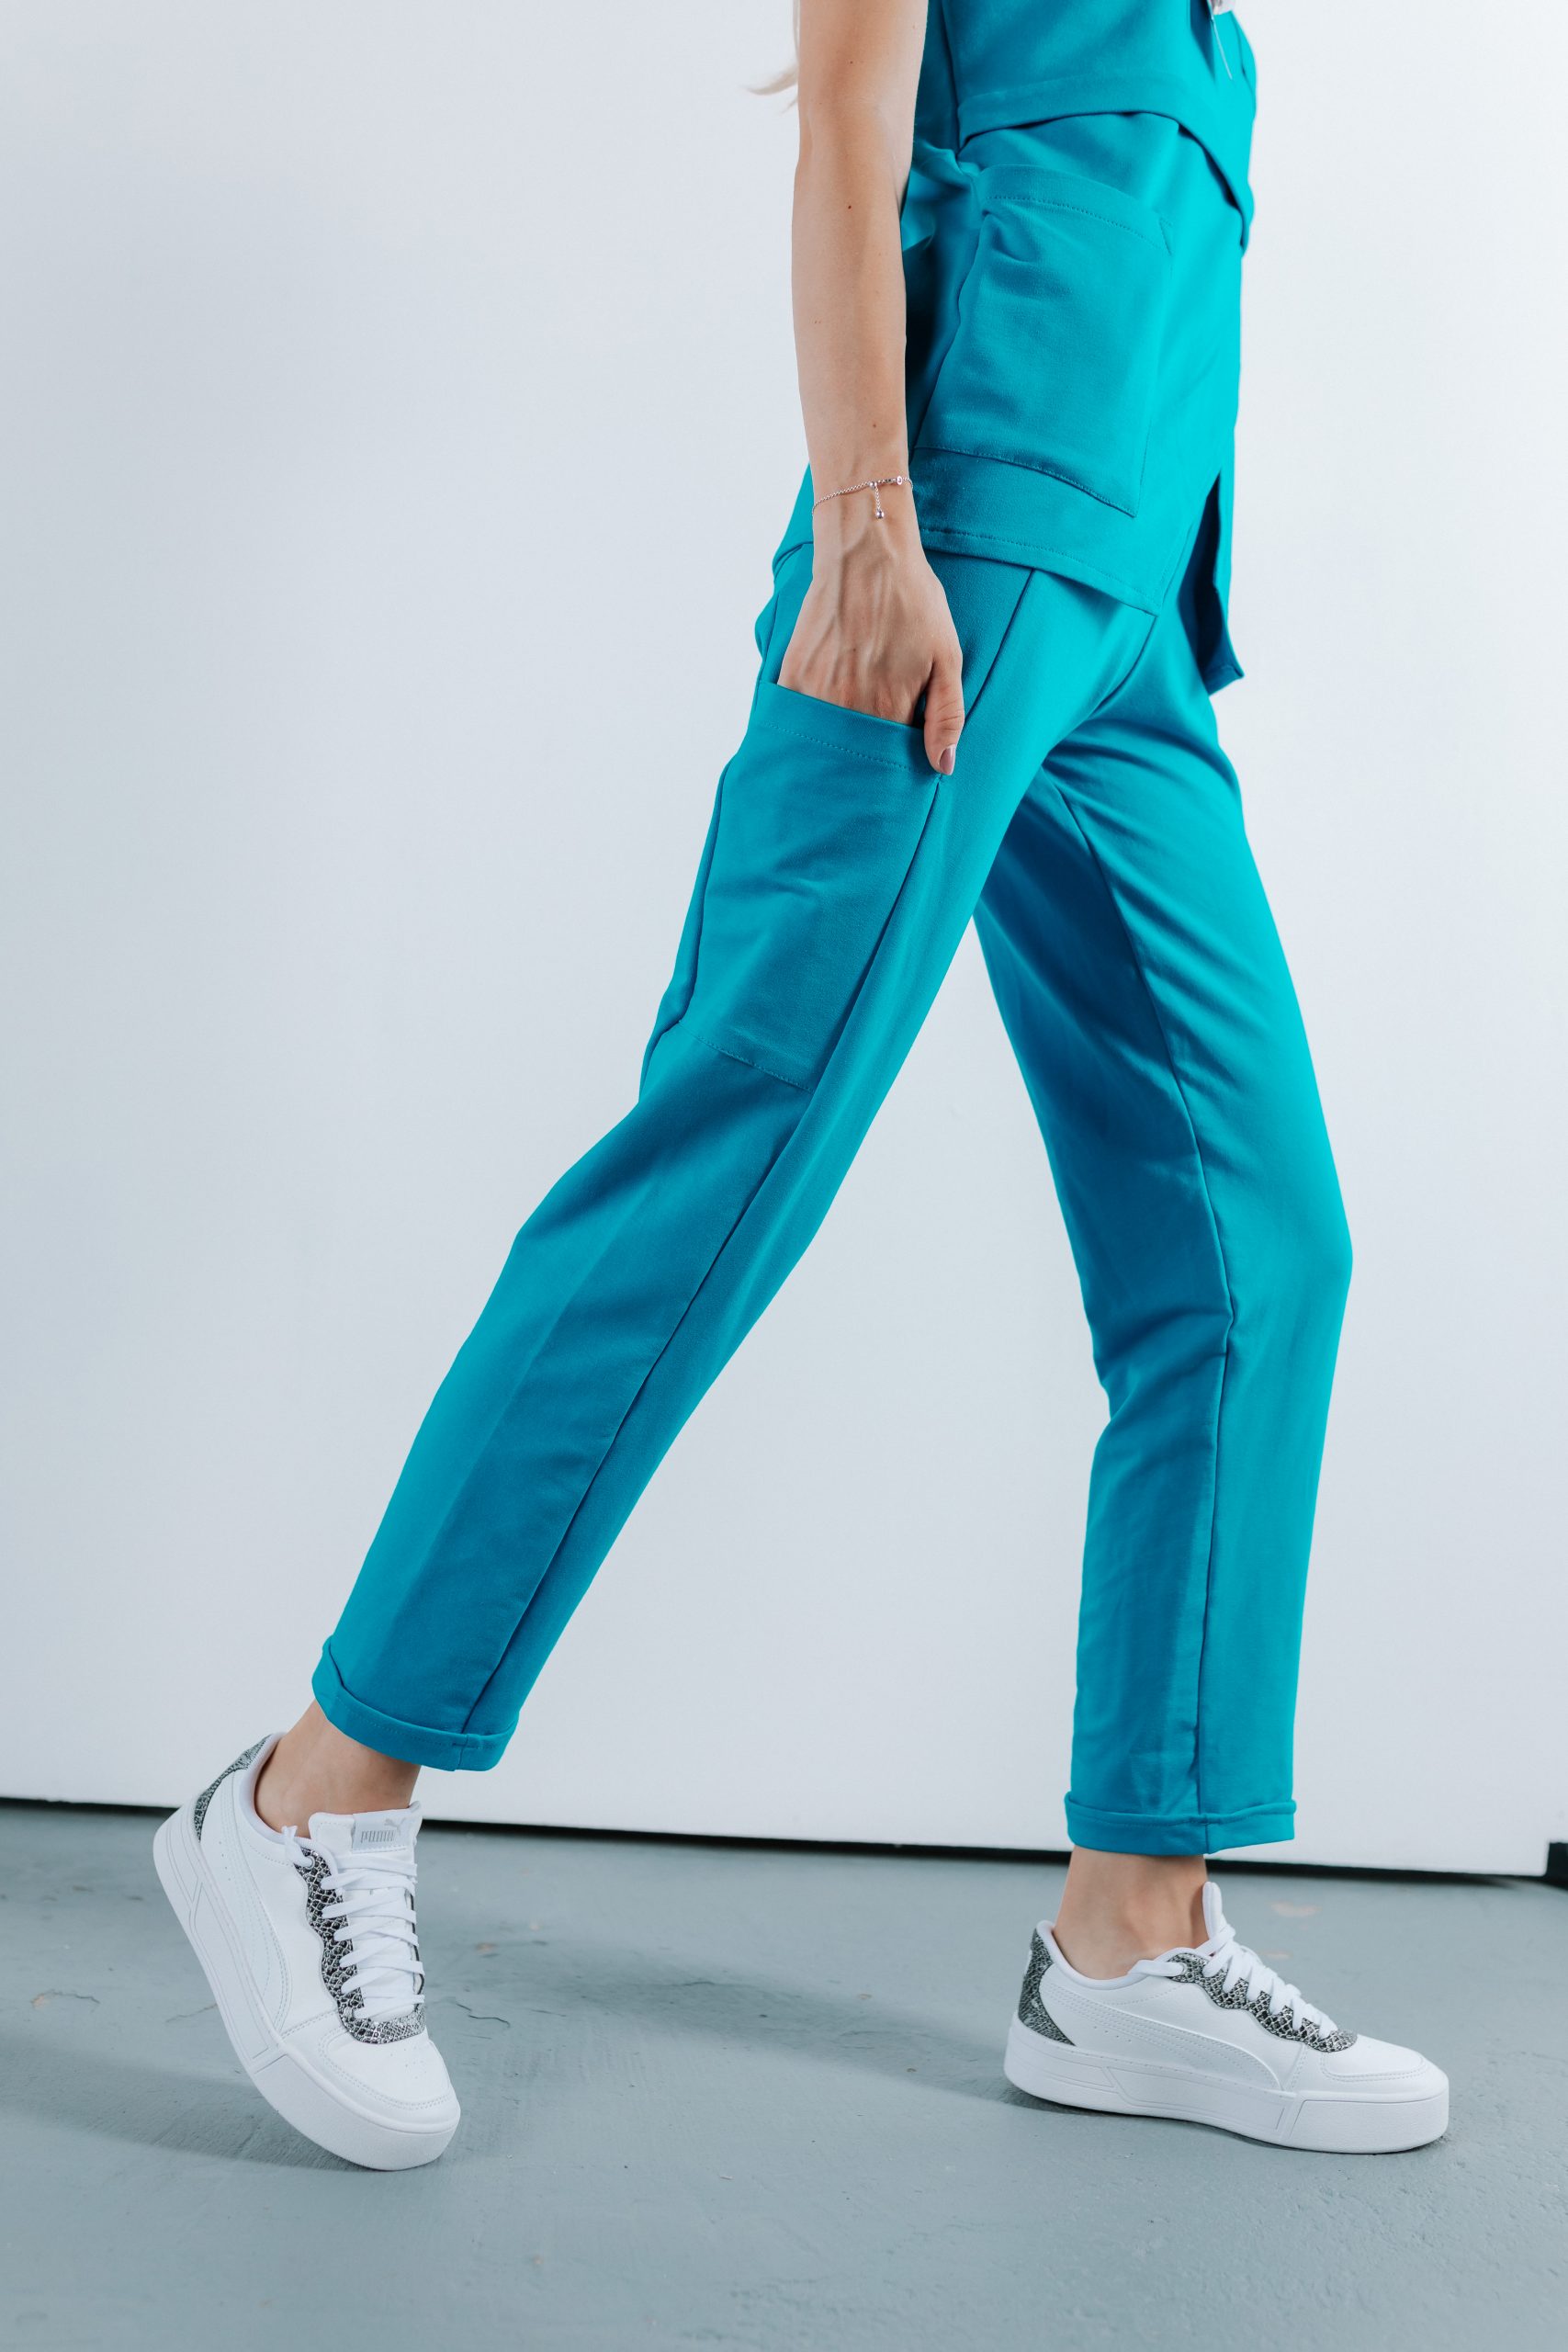 Doamna doctor ce poarta pantaloni de scrub medical albastru azure.Uniforma medicala albastru azure este din bumbac 95% si elastan 5% cu croiala fit.